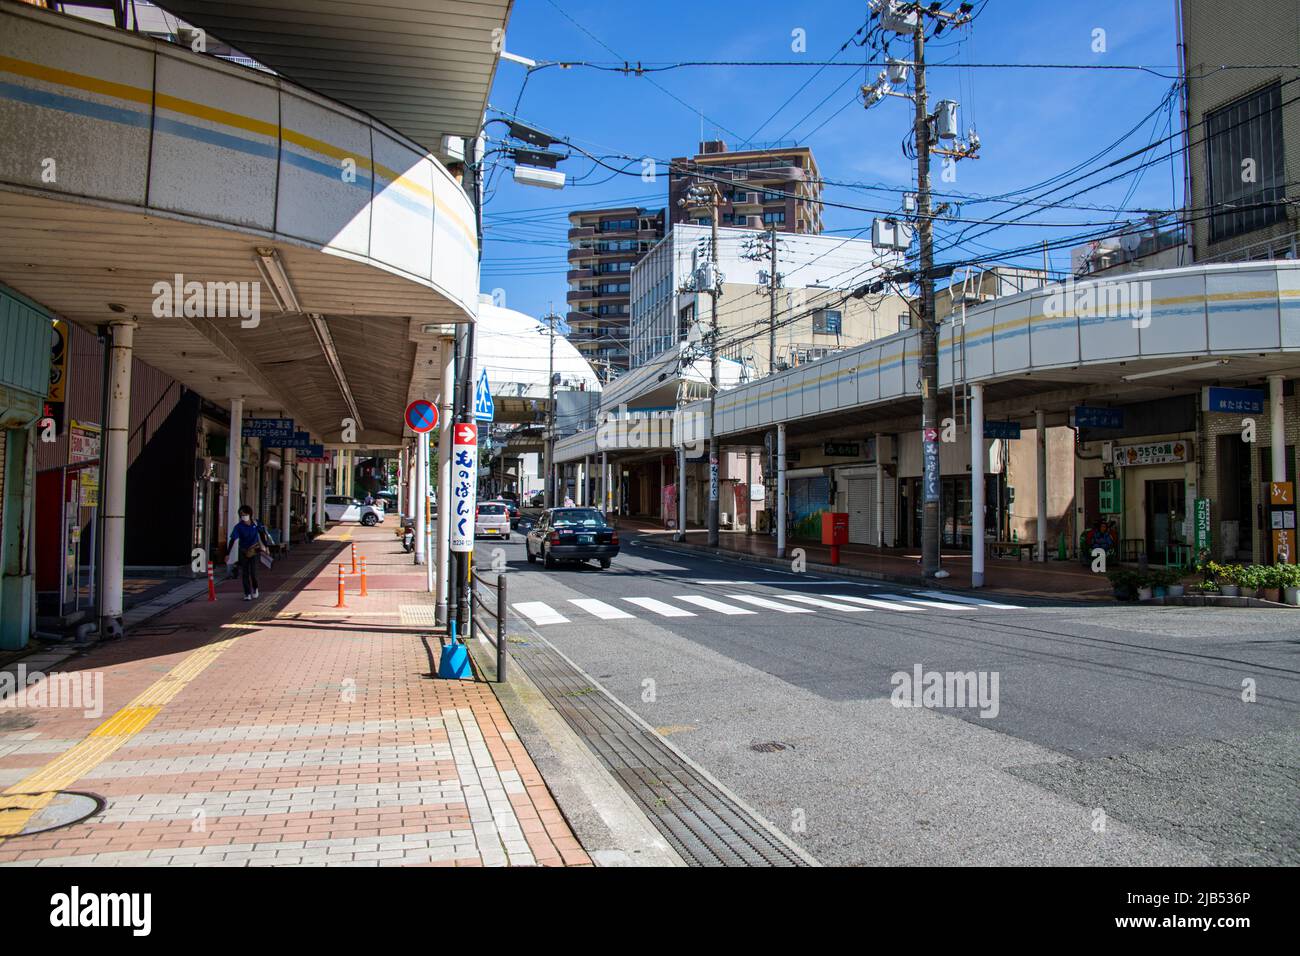 Stadtbild Einkaufsstraße Carato (Carato Shoutengai) an sonnigen Tagen. Carato ist bekannt als einer der berühmtesten Sehenswürdigkeiten in Yamaguchi Stockfoto